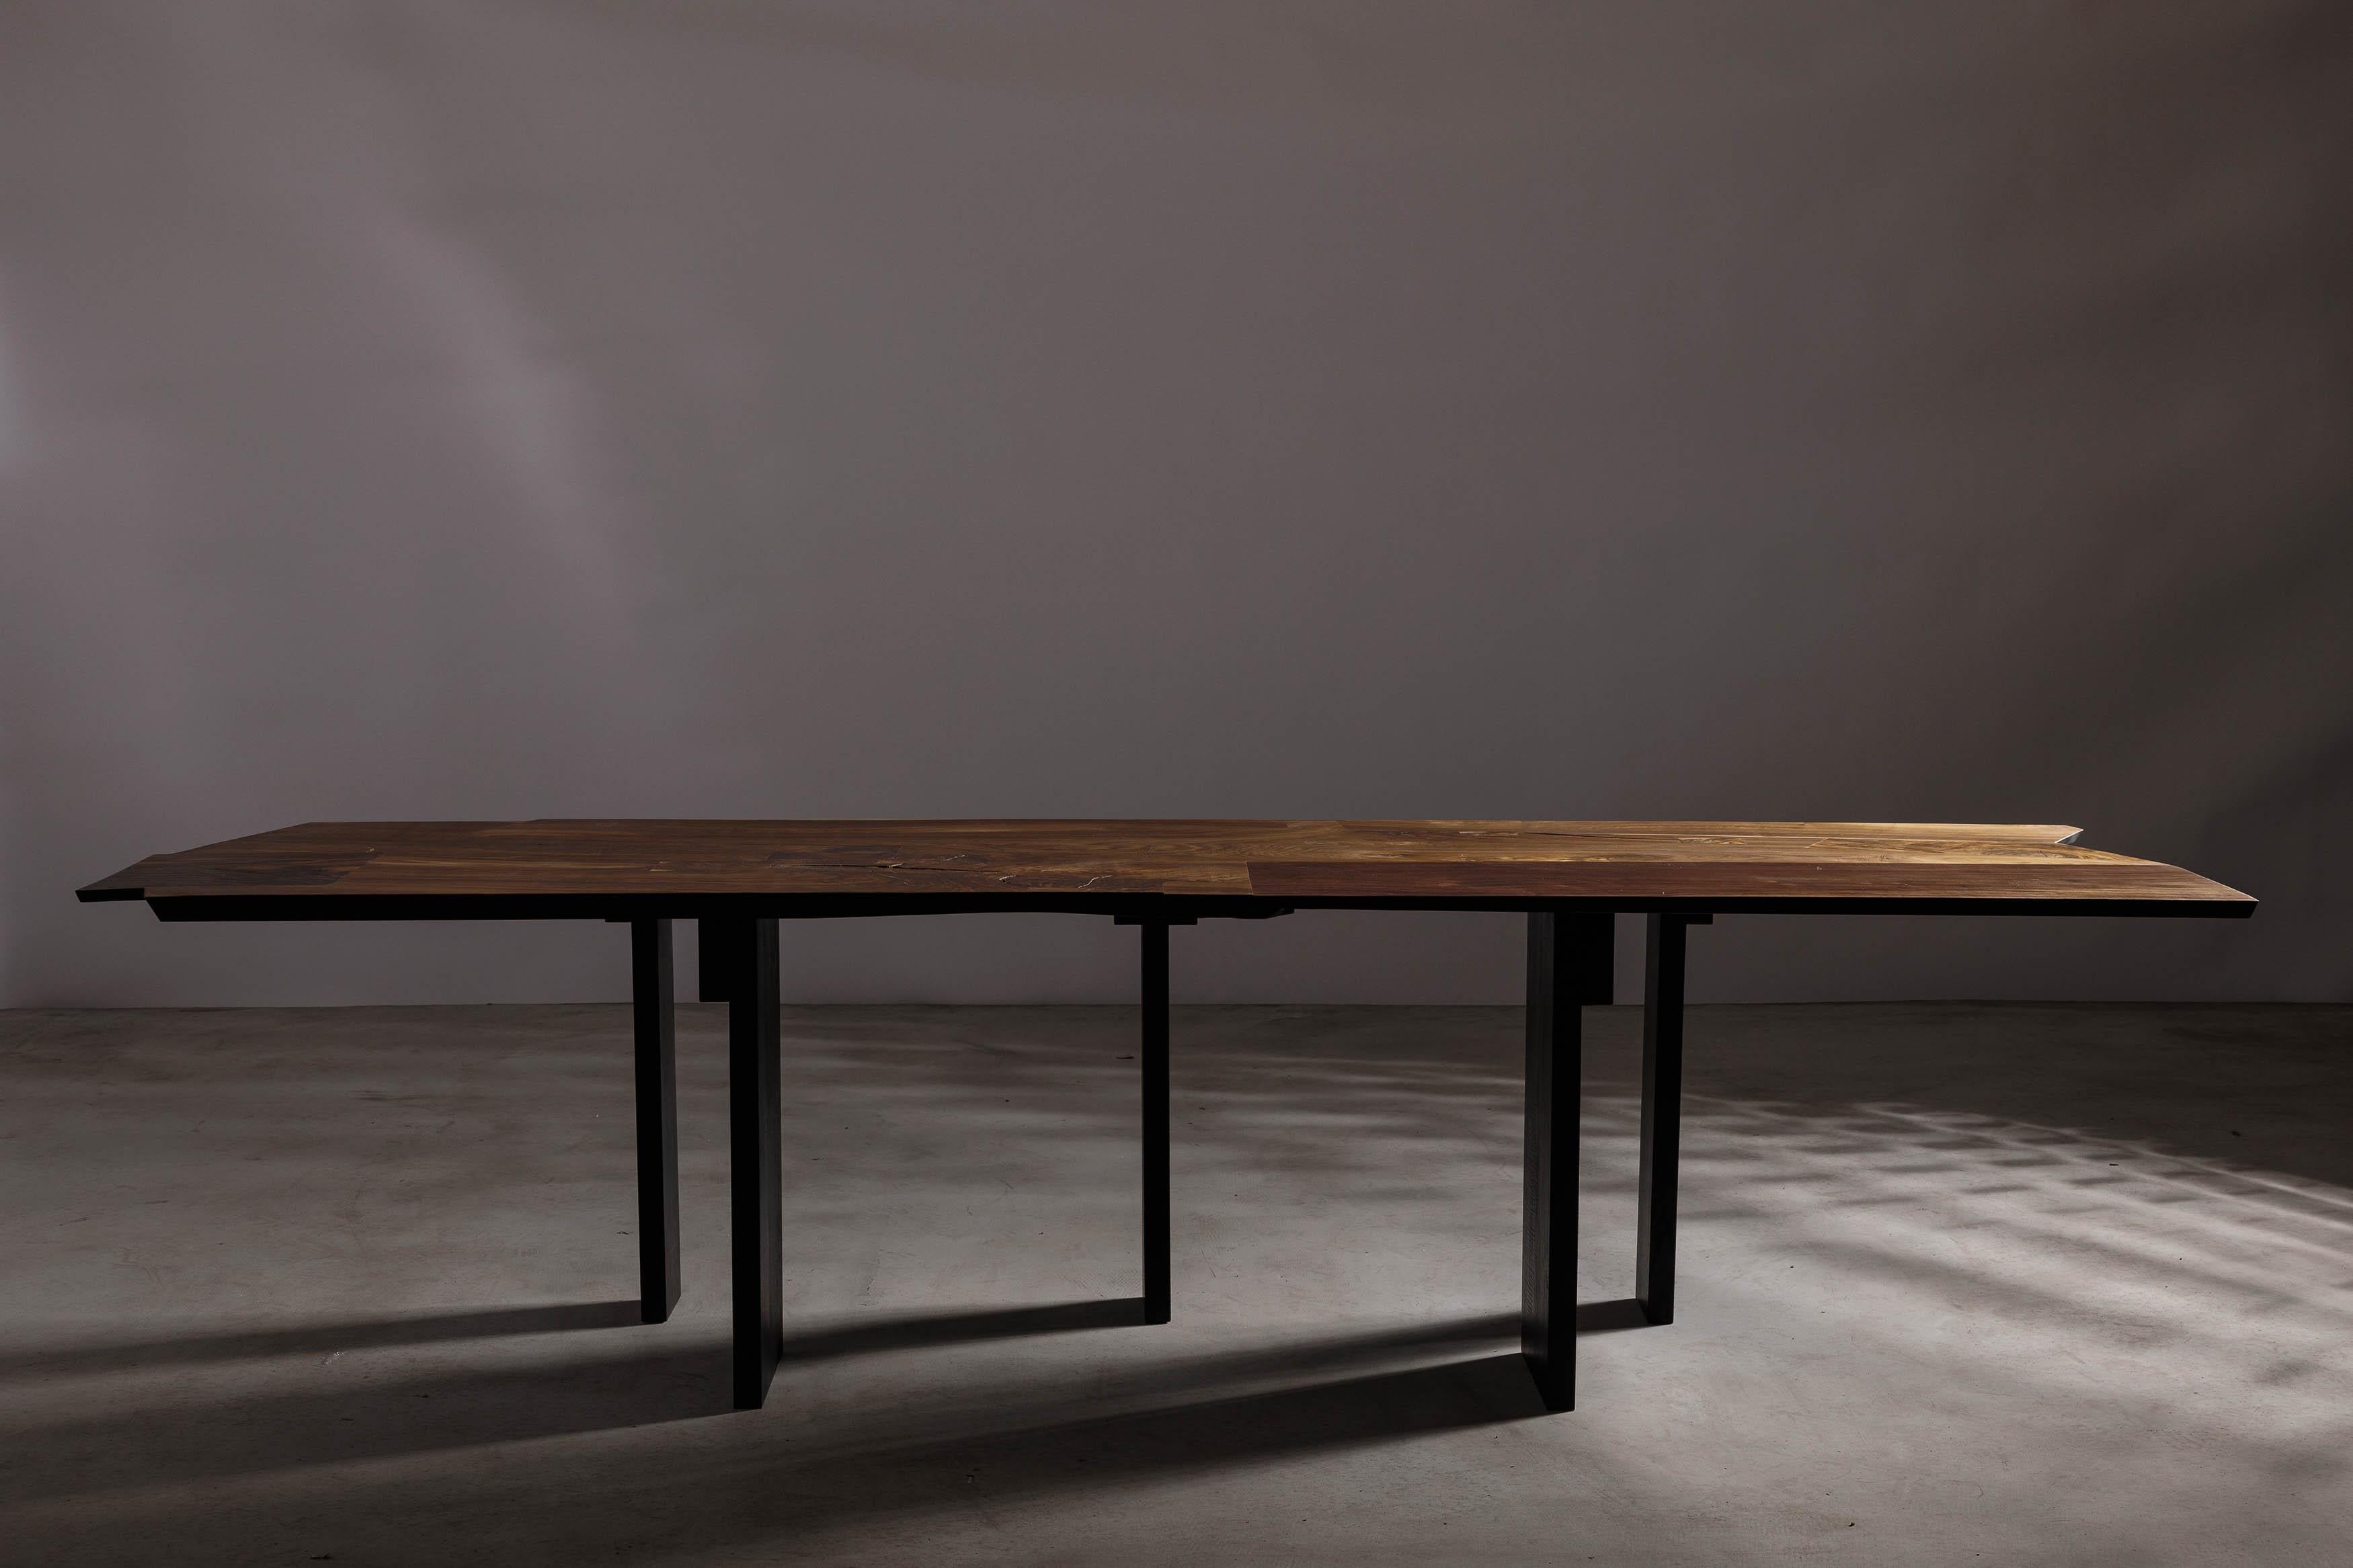 Nous vous présentons notre superbe table de salle à manger, un mélange parfait de brutalisme et de minimalisme, avec une texture organique à la fois robuste et raffinée. Ce chef-d'œuvre fait partie de notre dernière collection, un hommage au